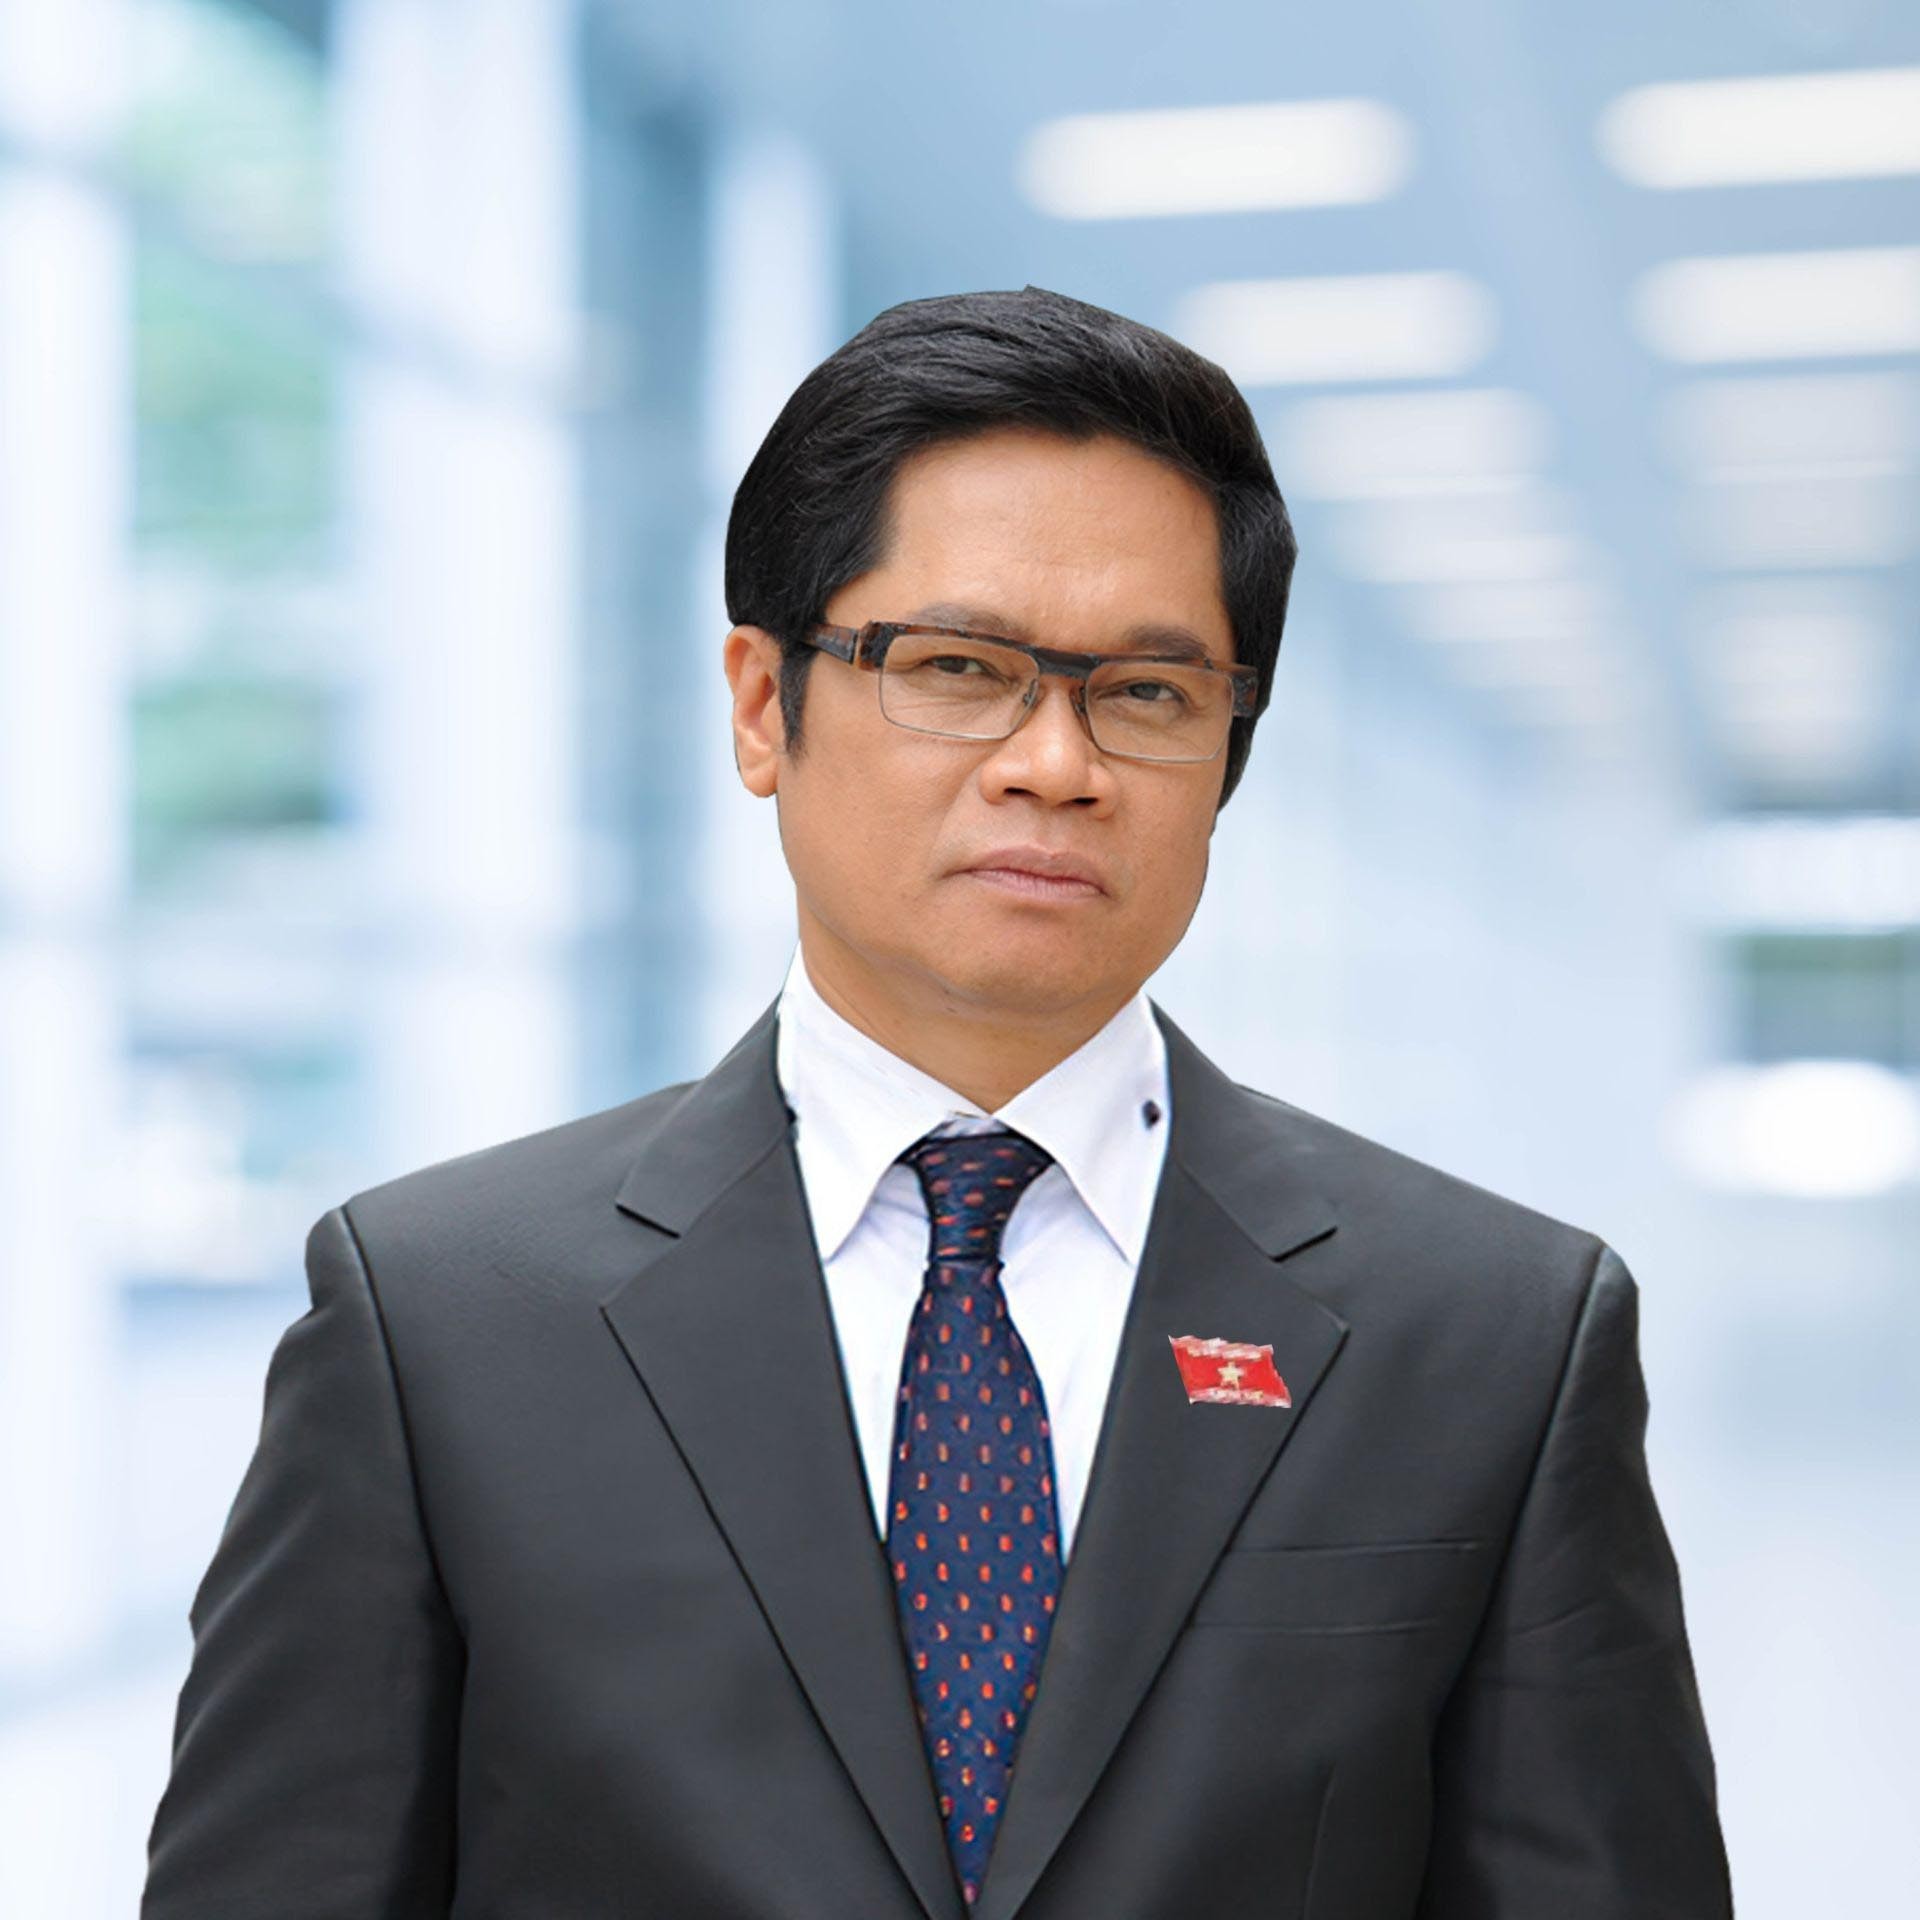 TS. Vũ Tiến Lộc, Chủ tịch Trung tâm trọng tài quốc tế Việt Nam (VIAC), Ủy viên Ủy ban Kinh tế của Quốc hội